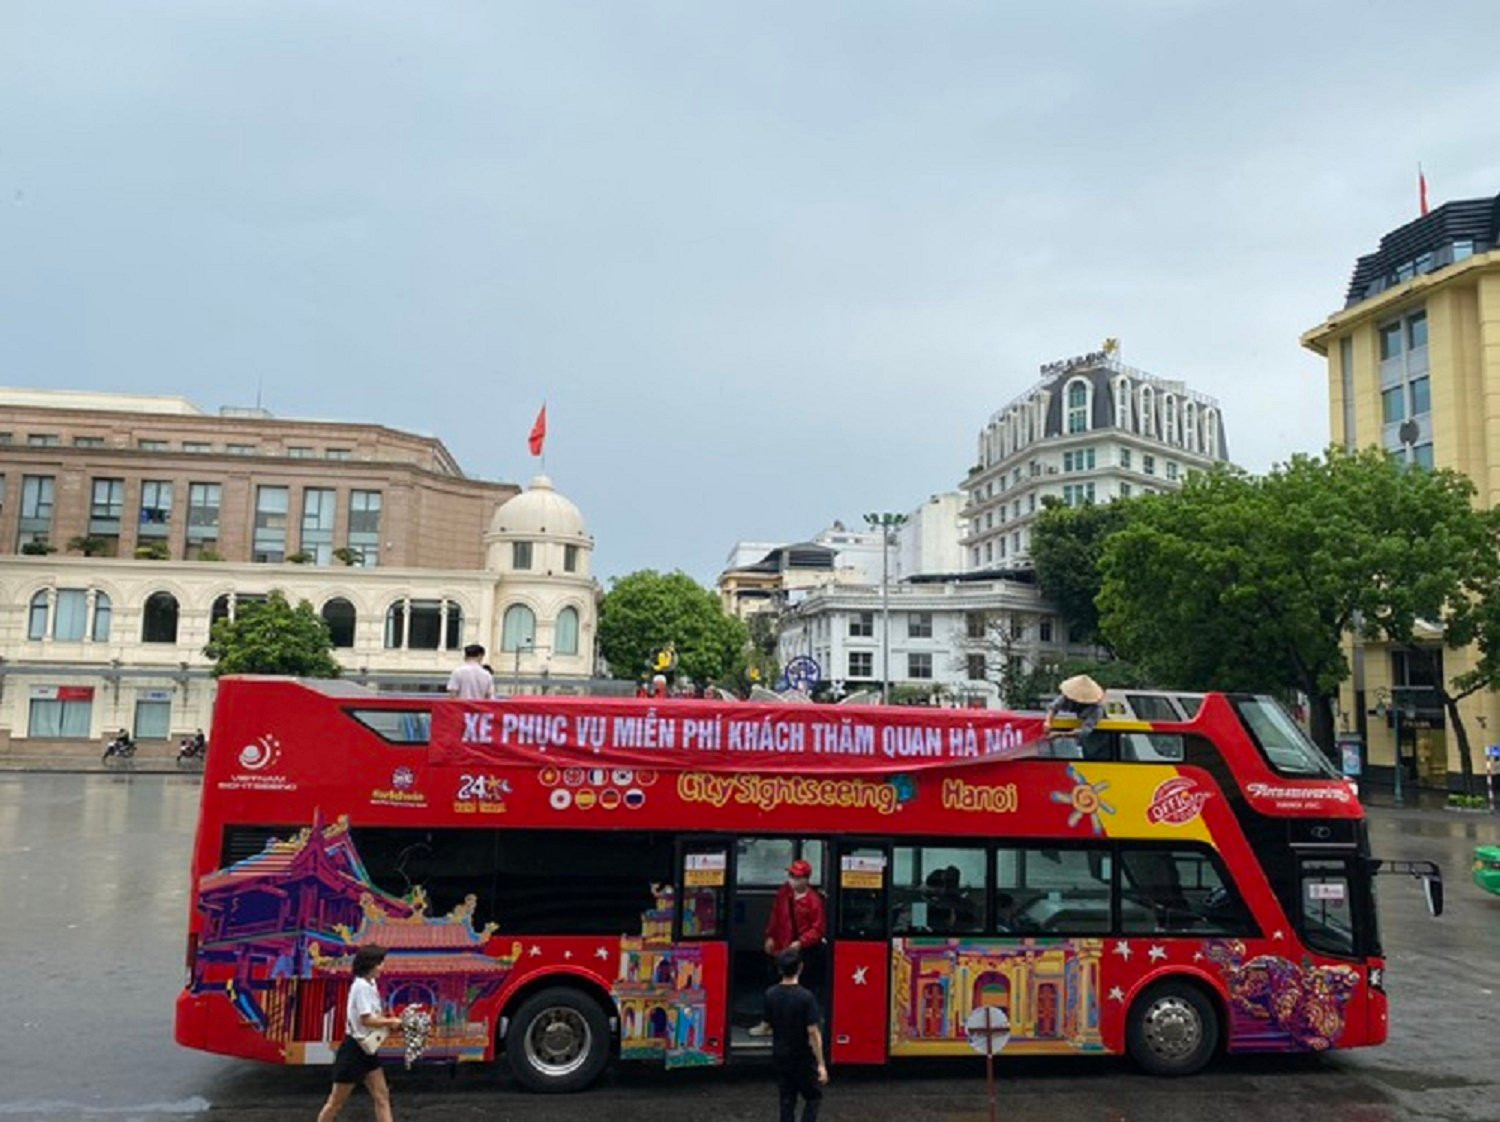 Băng rôn chào đón du khách đi xe bus 2 tầng Hà Nội lại sai chính tả - 1